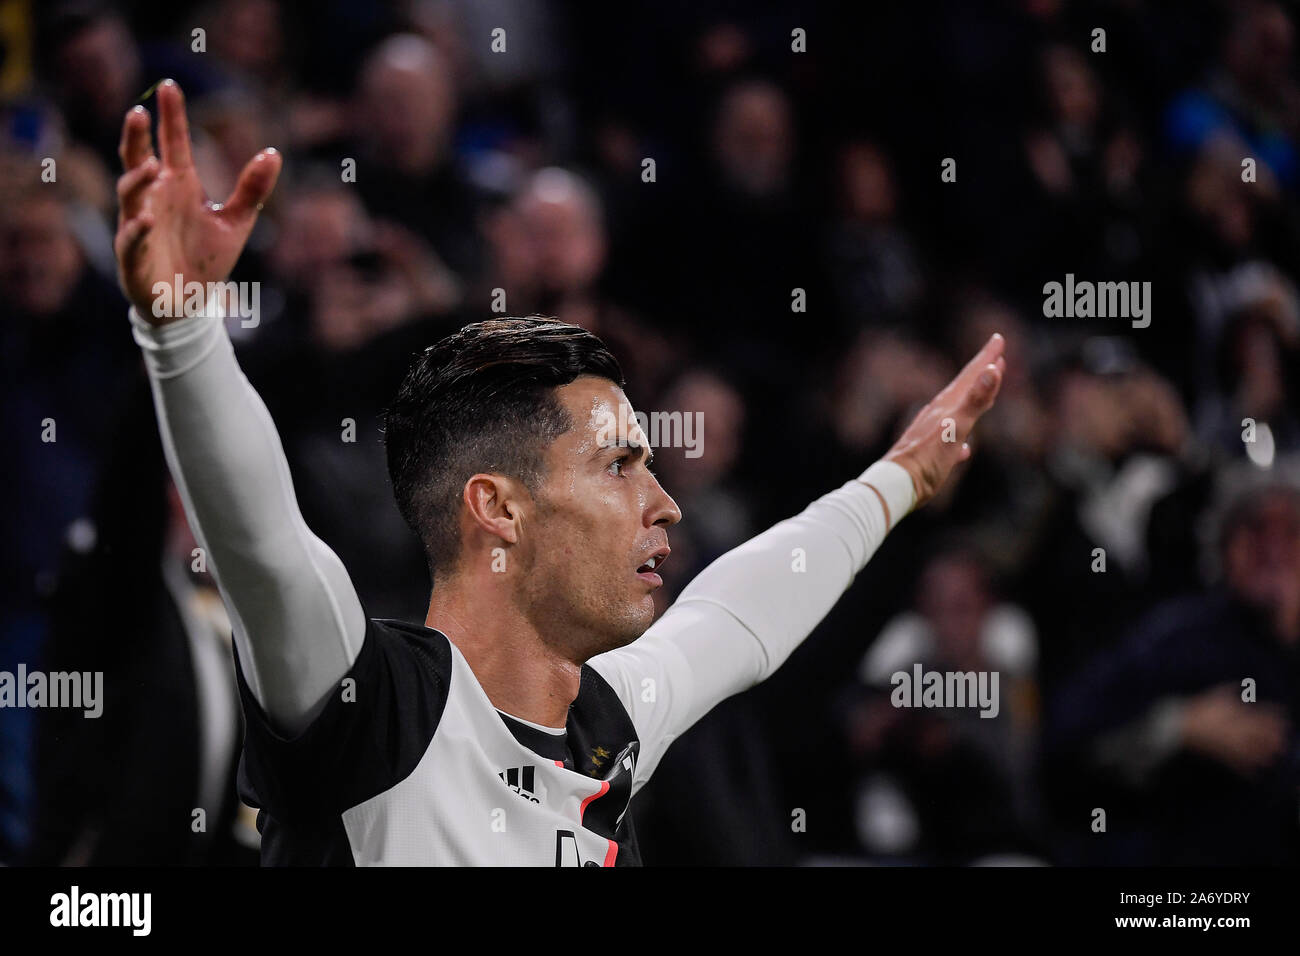 Cristiano Ronaldo, joueur de la Juventus lors de la Juventus - Bologne match de foot dans le stade Allianz à Turin Banque D'Images